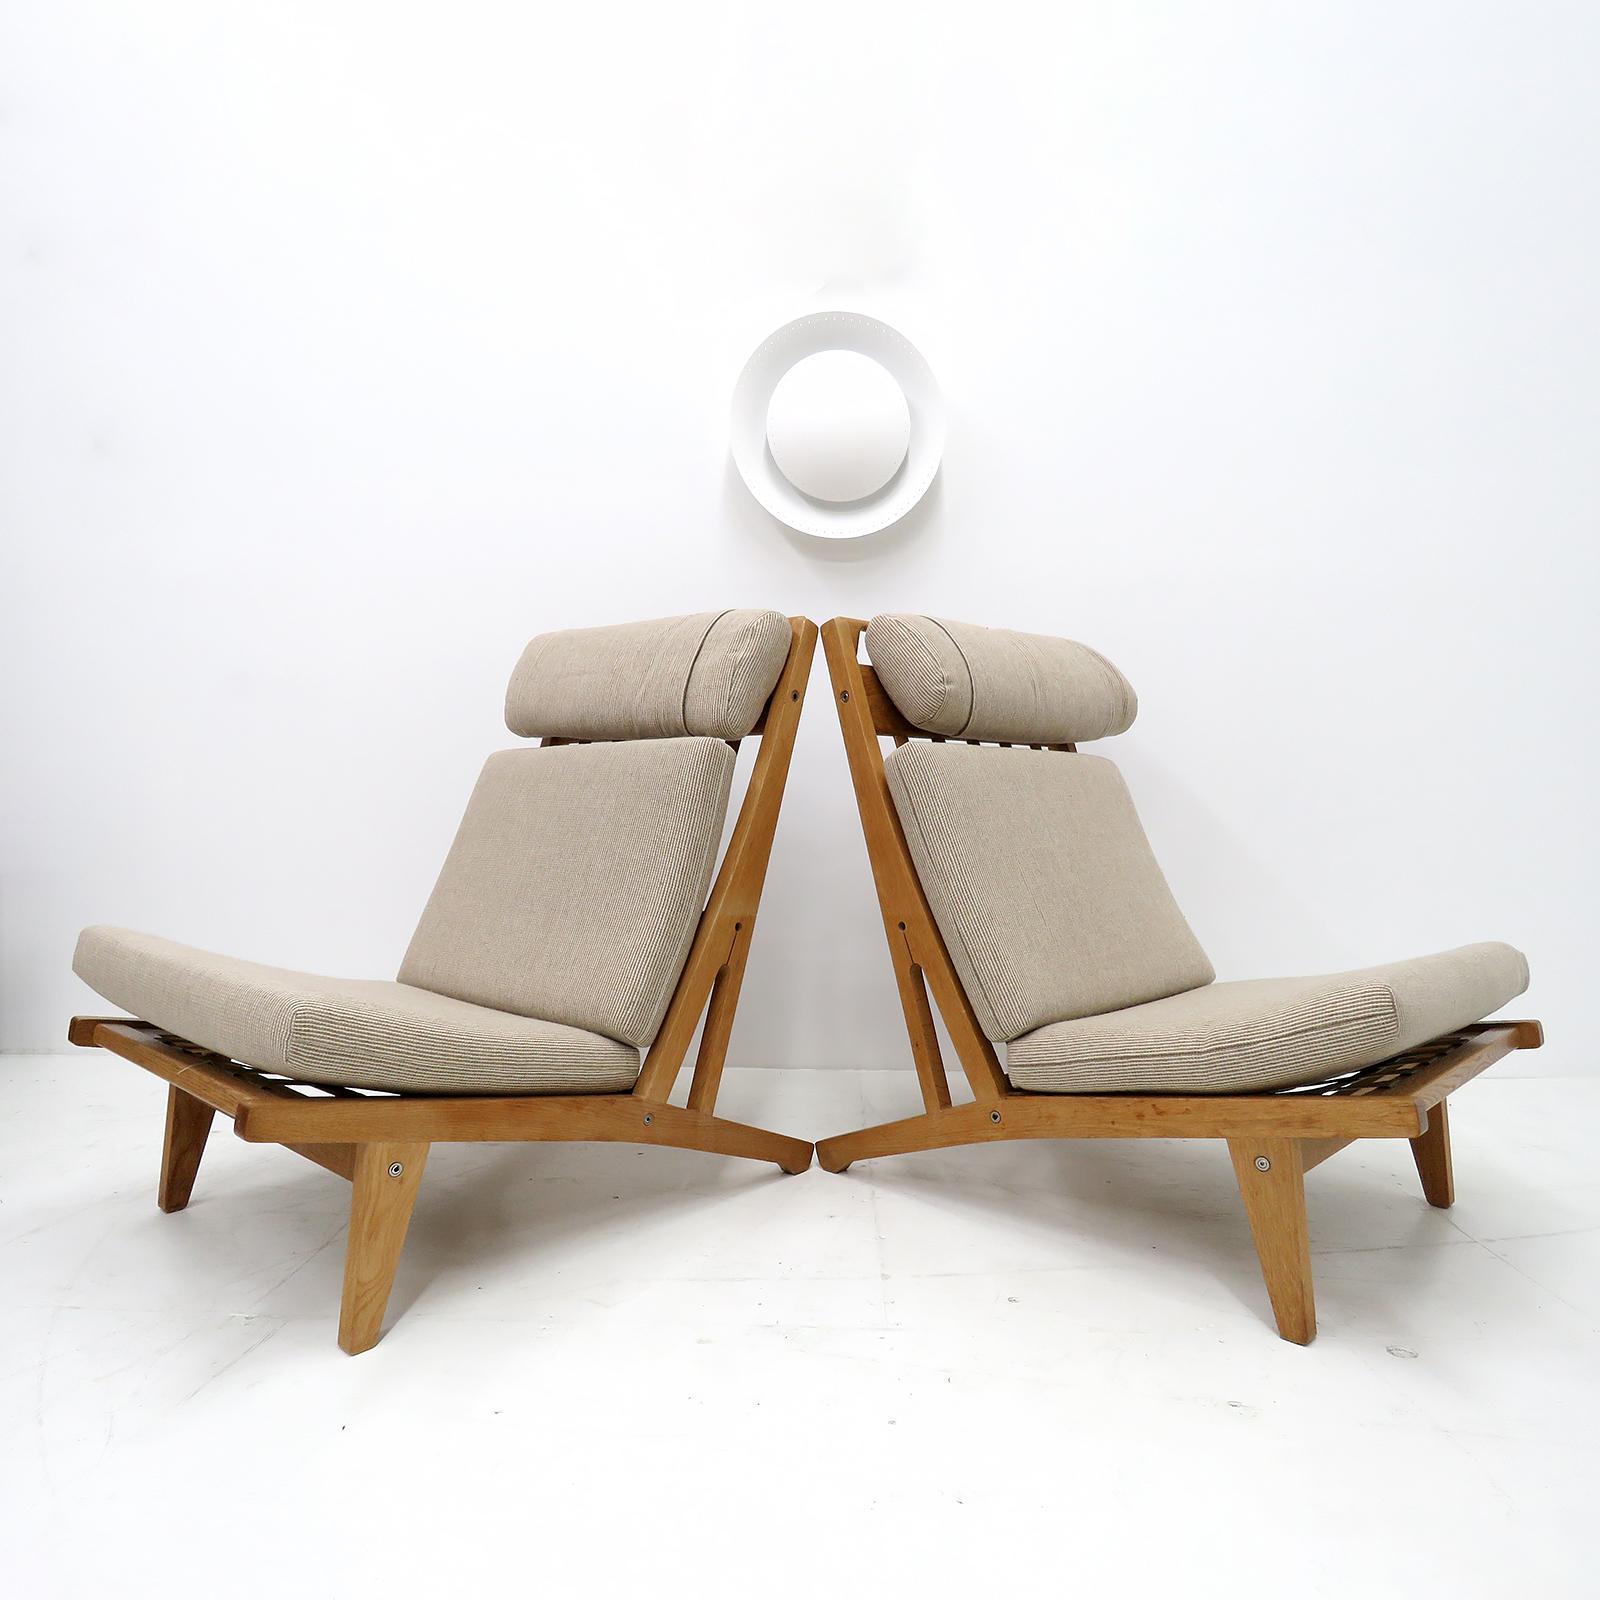 Grande chaise à dossier haut de Hans Wegner avec structure en chêne massif et coussins en laine beige (apparemment retapissés à une date ultérieure), produite par GETAMA en 1969, modèle GE 375, coussin de nuque amovible, marque d'origine du